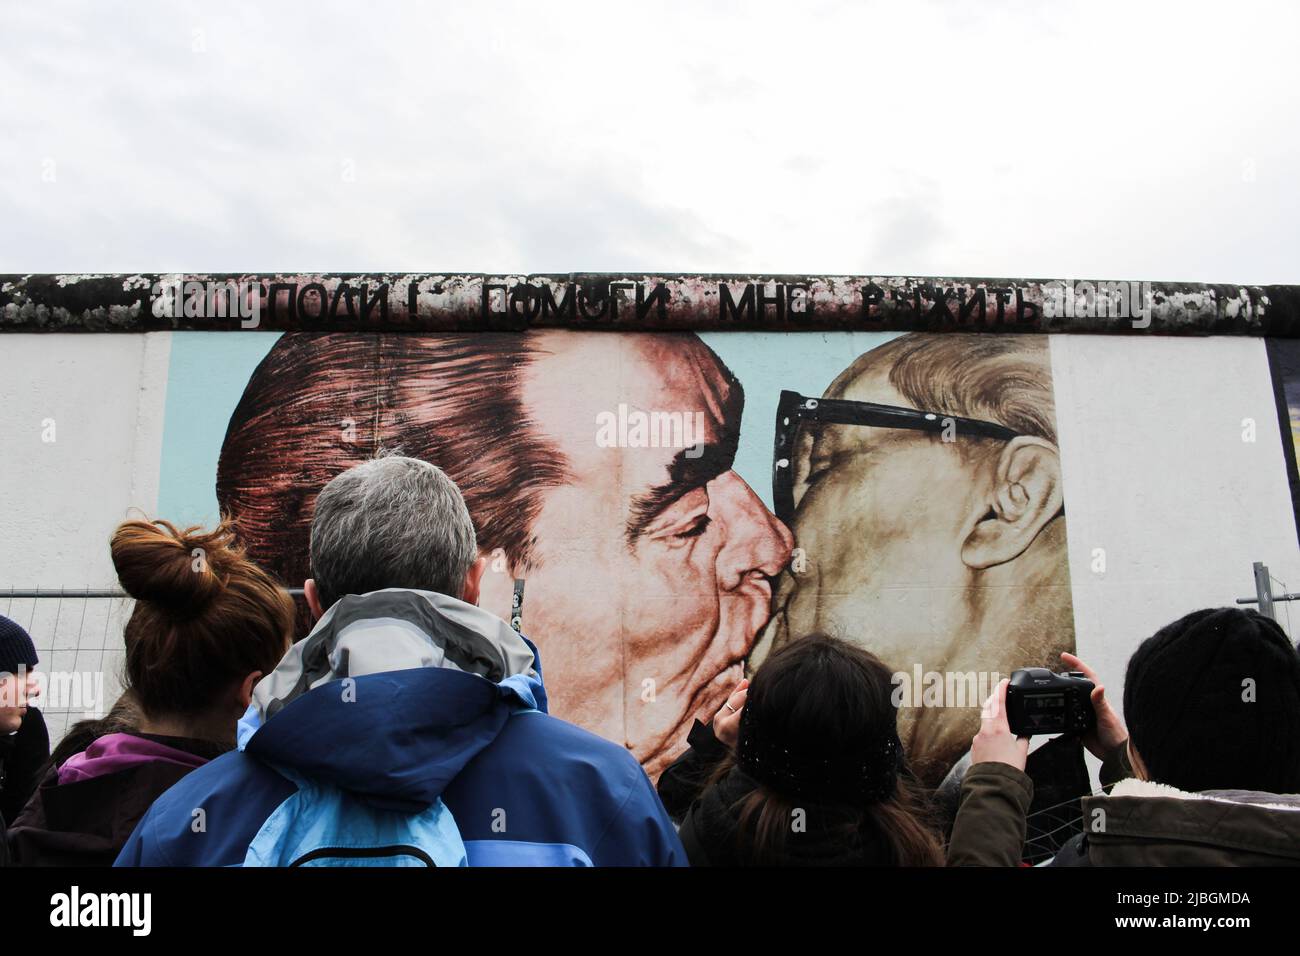 Arte iconica (il bacio di Leonid Brezhnev & Erich Honecker) di Dmitri Vrubel, sul muro di Berlino. Traduzione : Mio Dio, aiutami a sopravvivere a questo Amore mortale Foto Stock